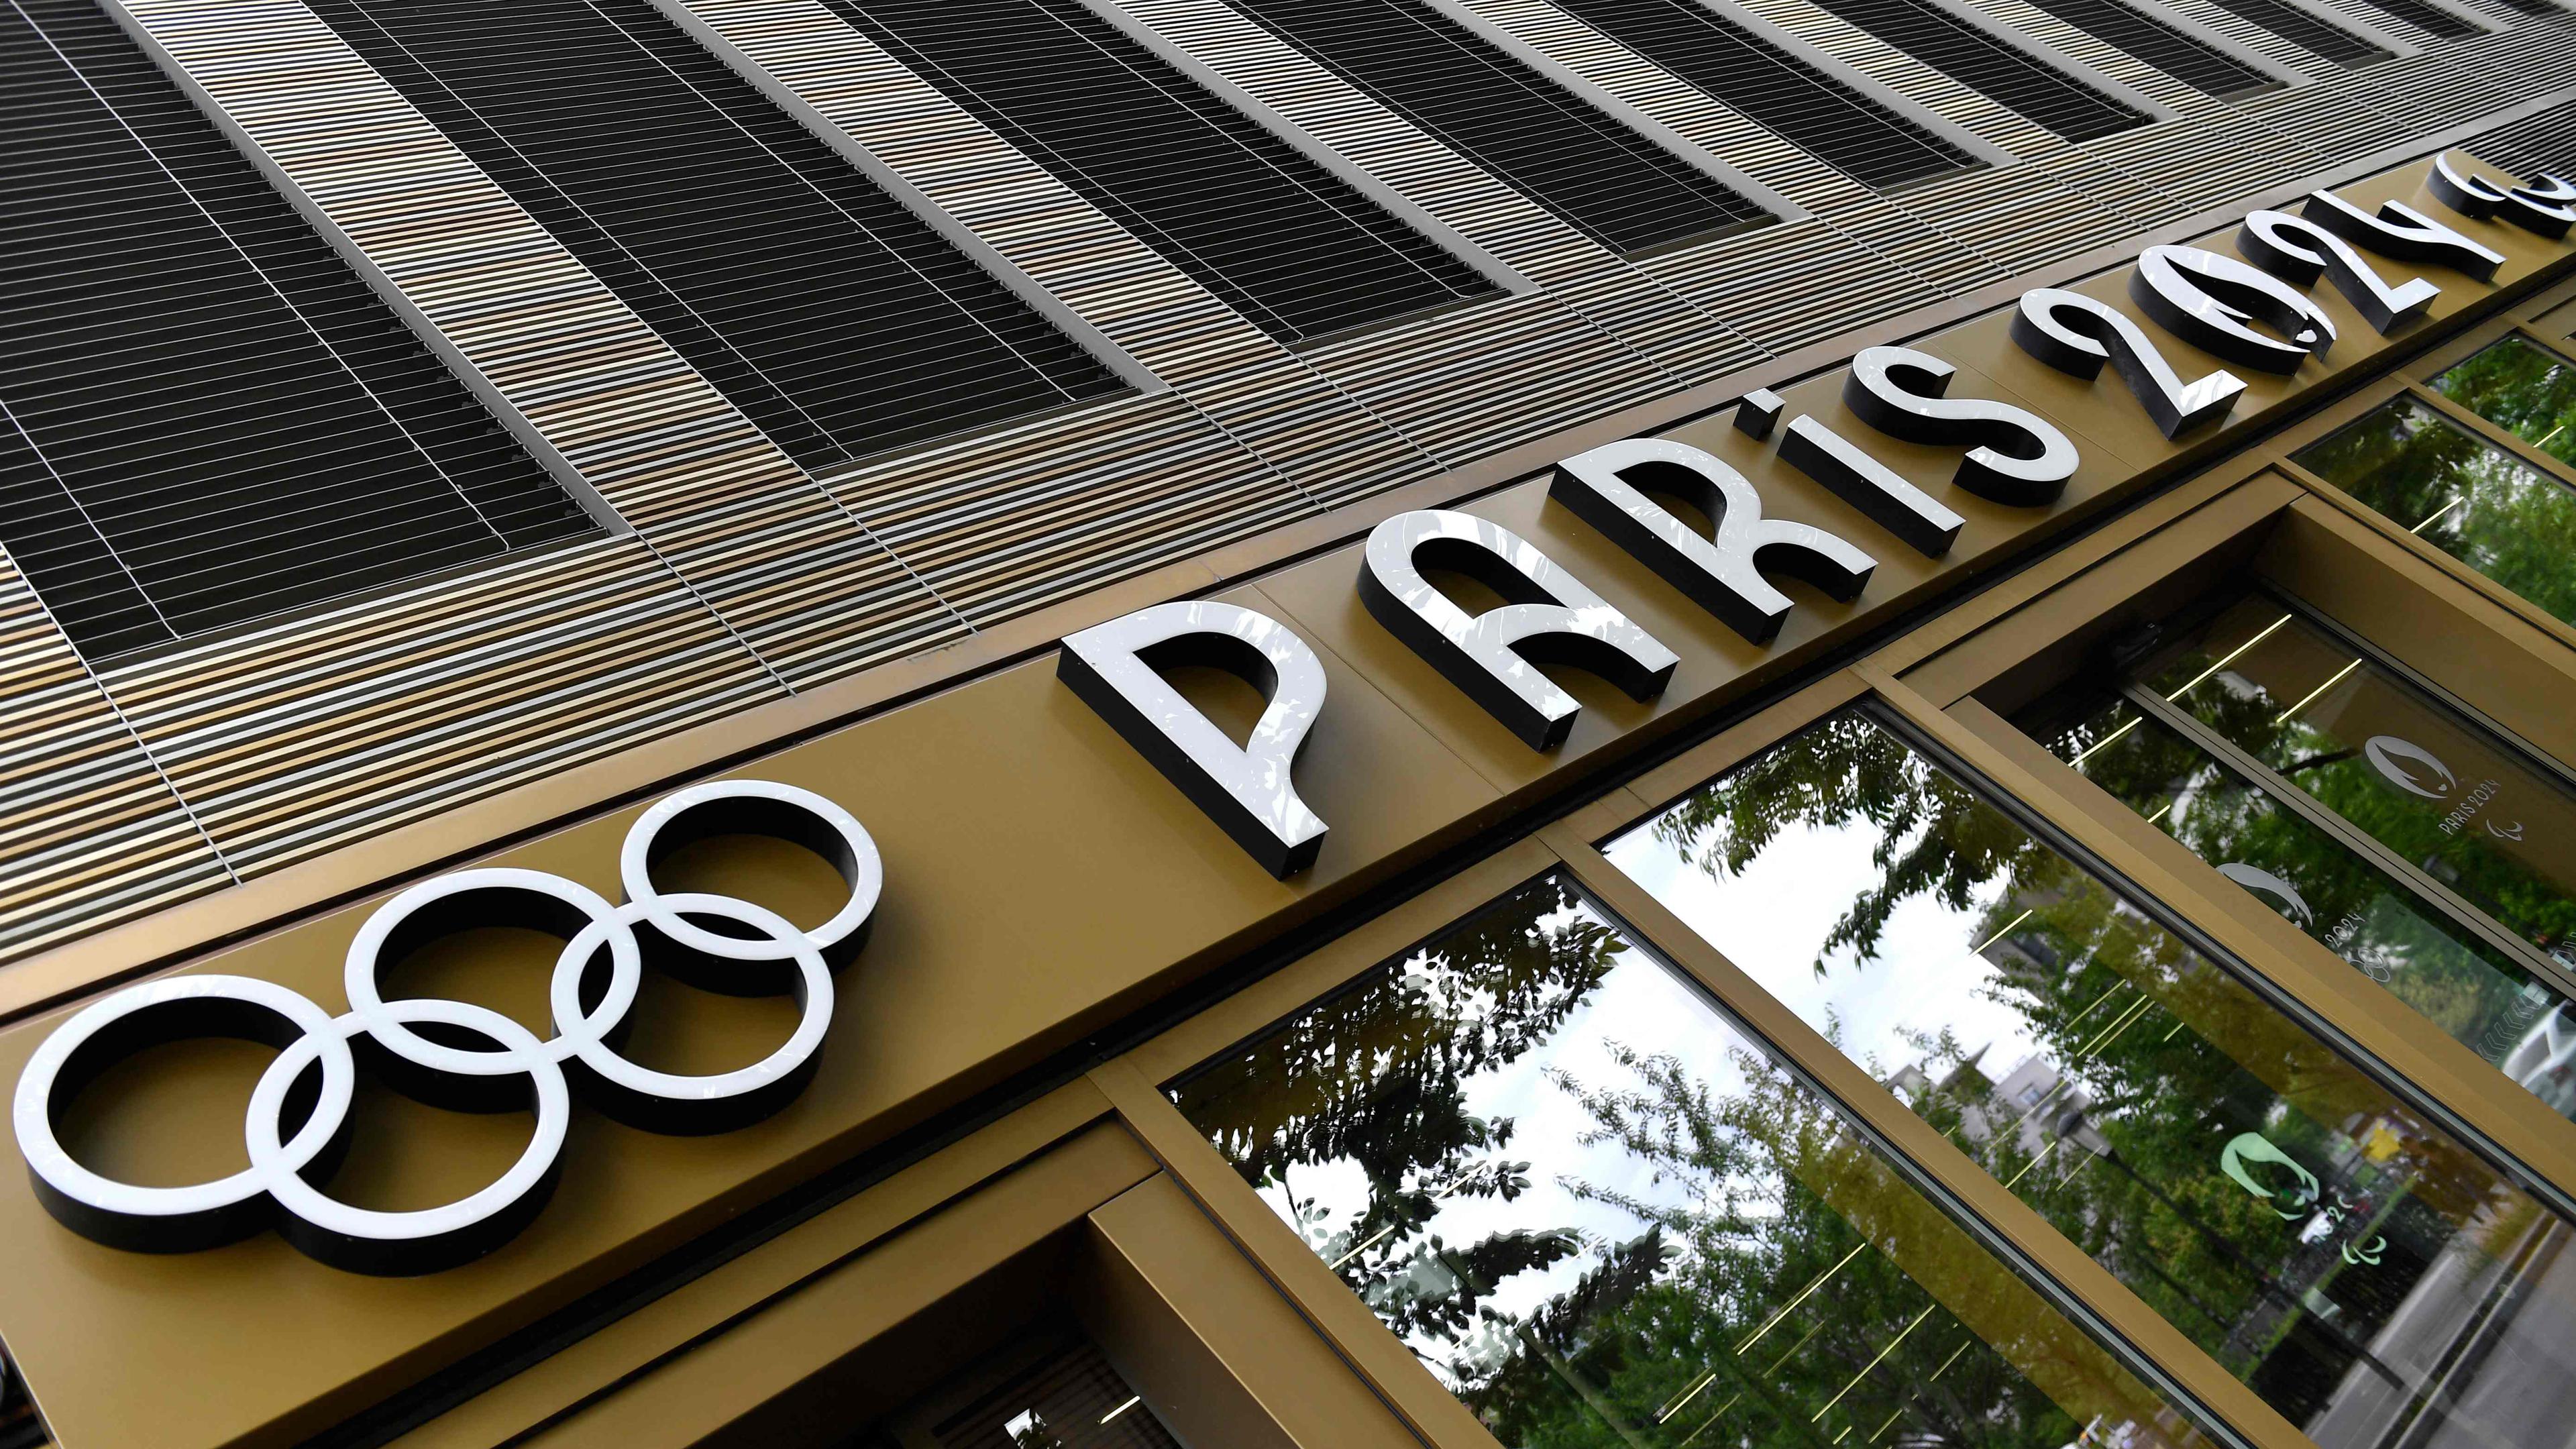 Jeux olympiques Paris 2024 : la Seine-Saint-Denis risque de perdre